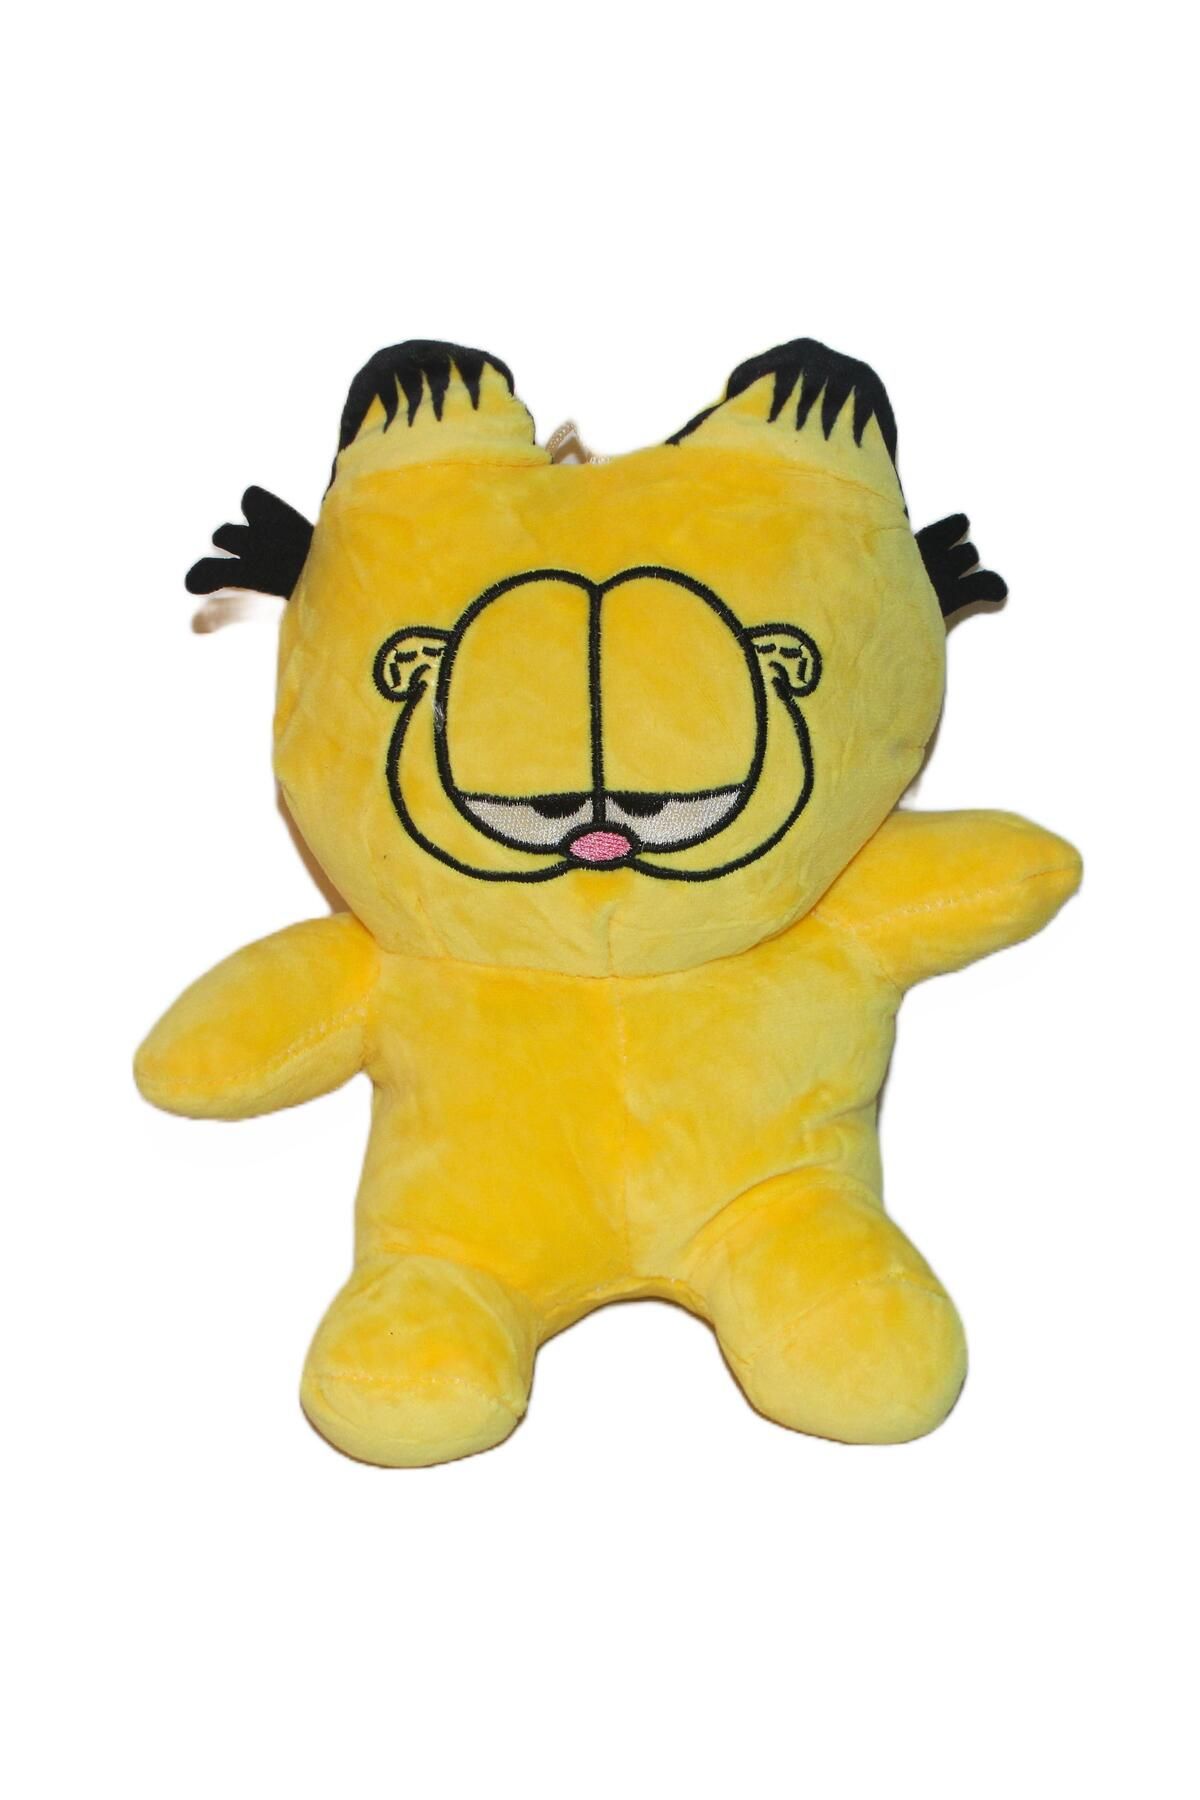 e-life shop Ithal Kumaş Tembel Kedi Garfield Karakter Figür Peluş Oyuncak Oyun Uyku Arkadaşı Yastık Peluş 24 Cm